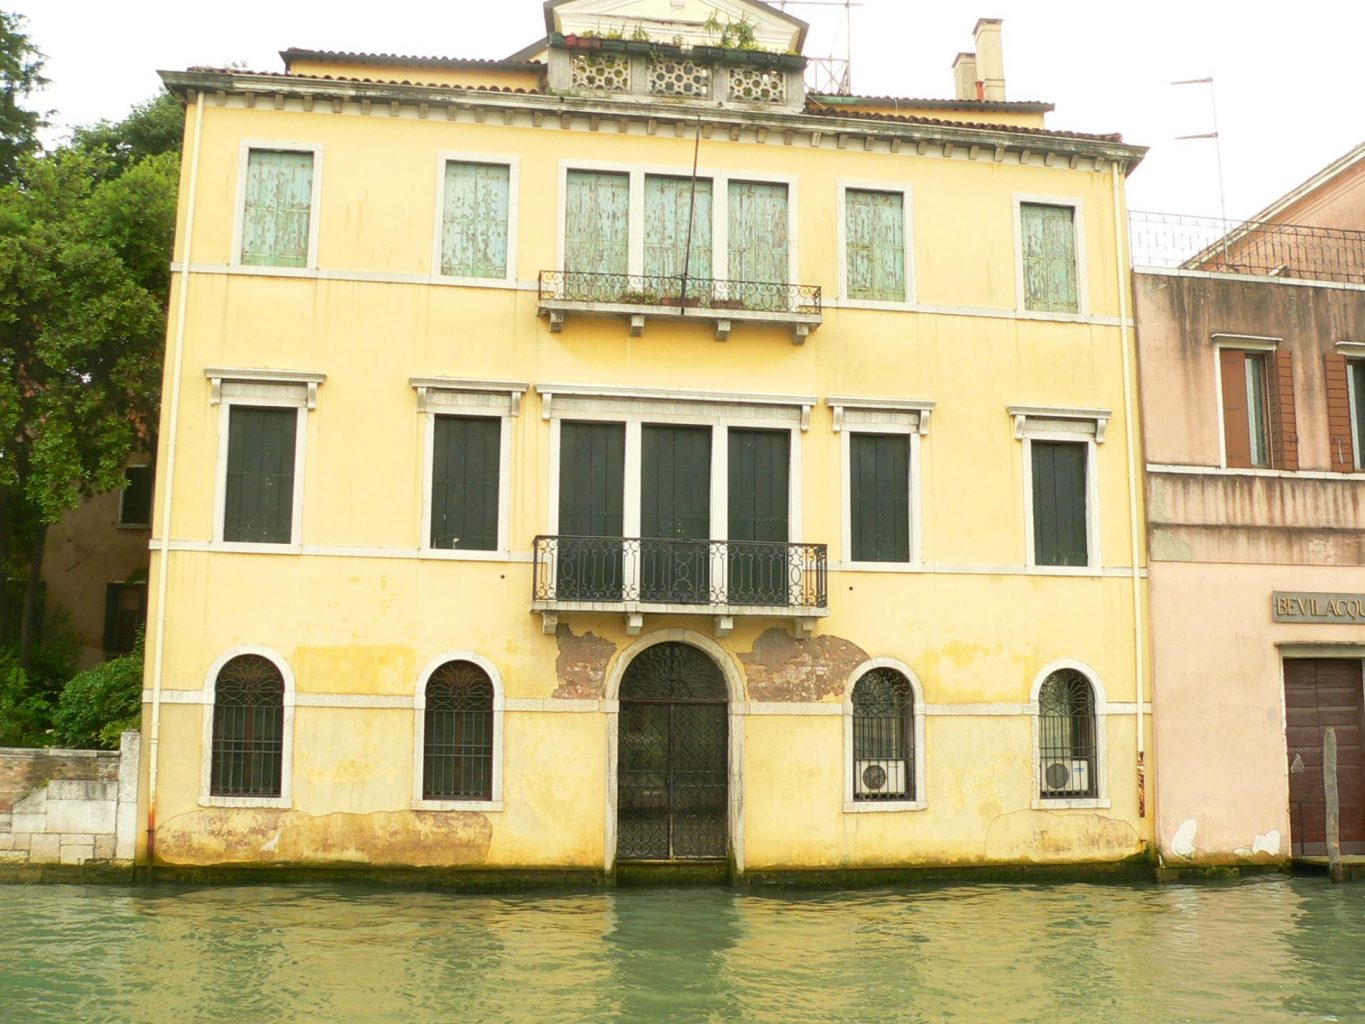 alt=Venice house"